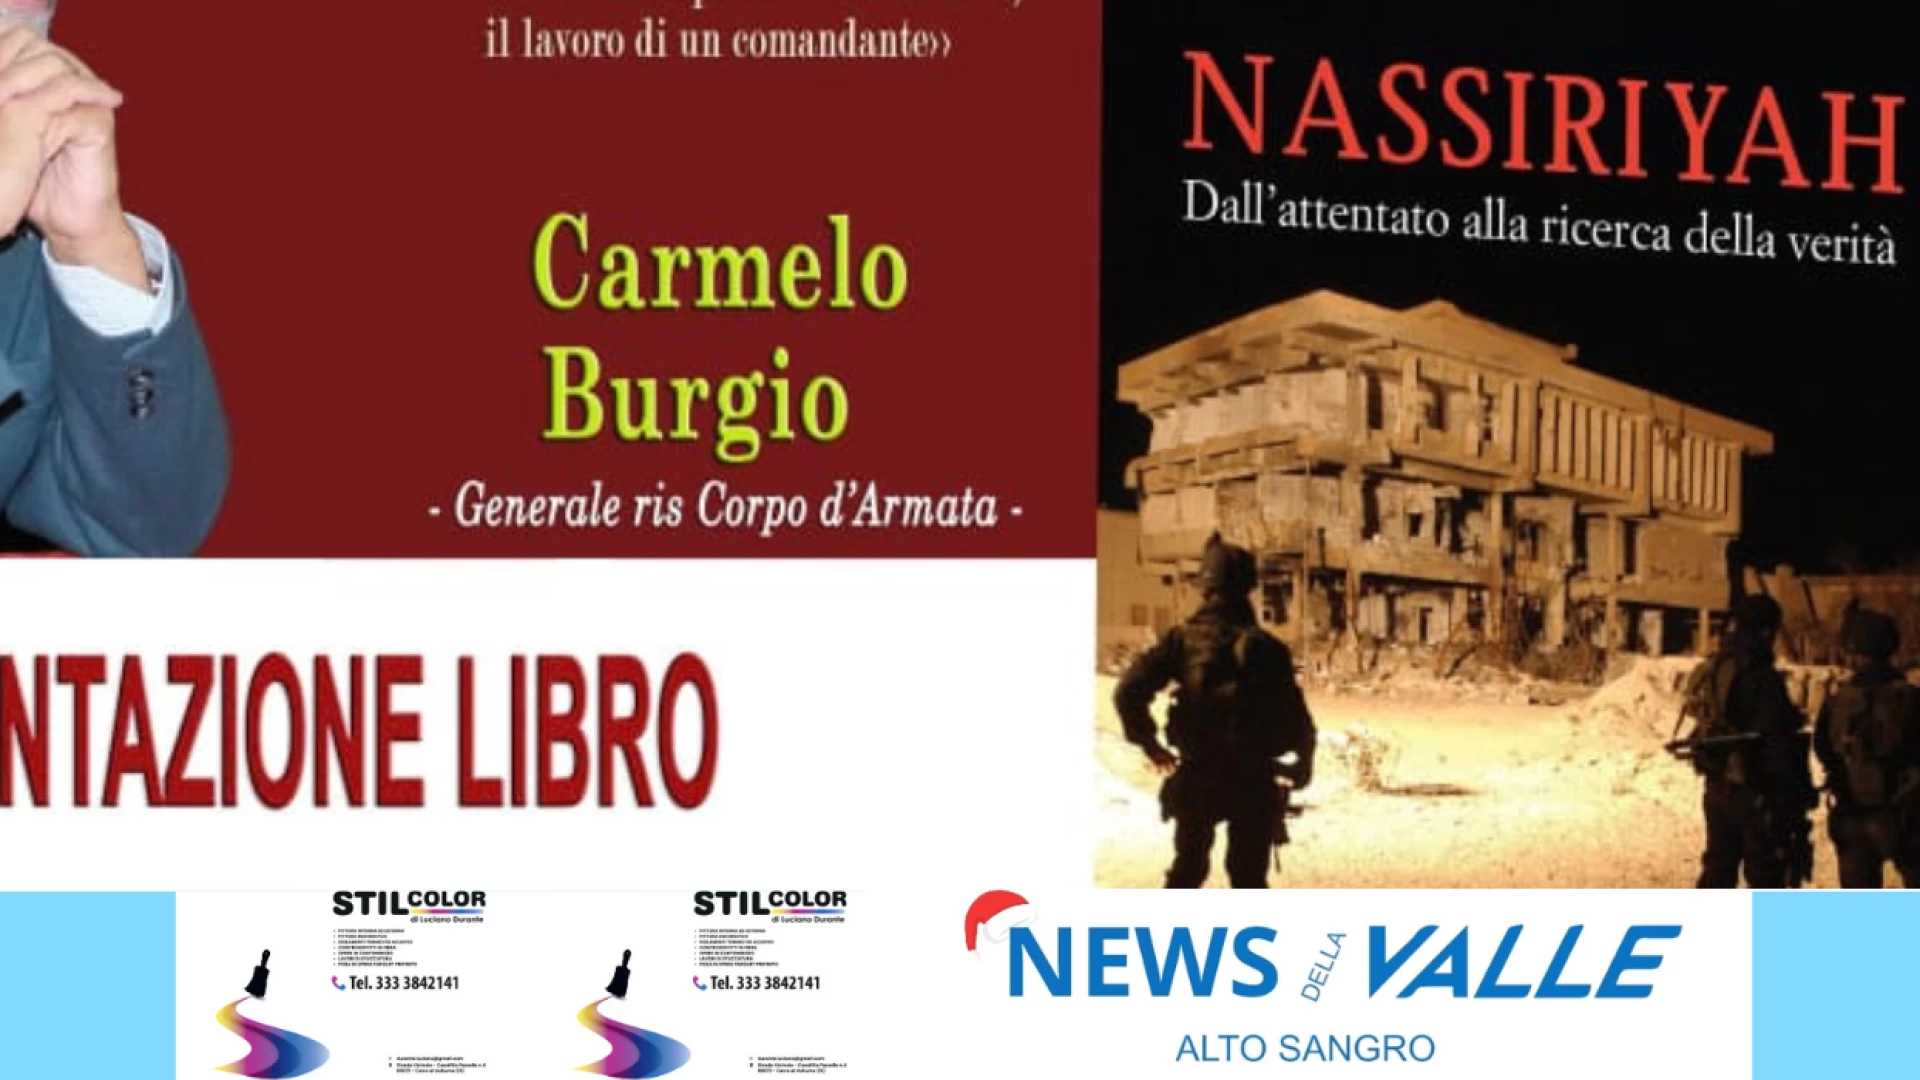 Venafro: in 14 dicembre Carmelo Burgio presenta il volume "Nassiriyah-dall'attentato all ricerca della verità".